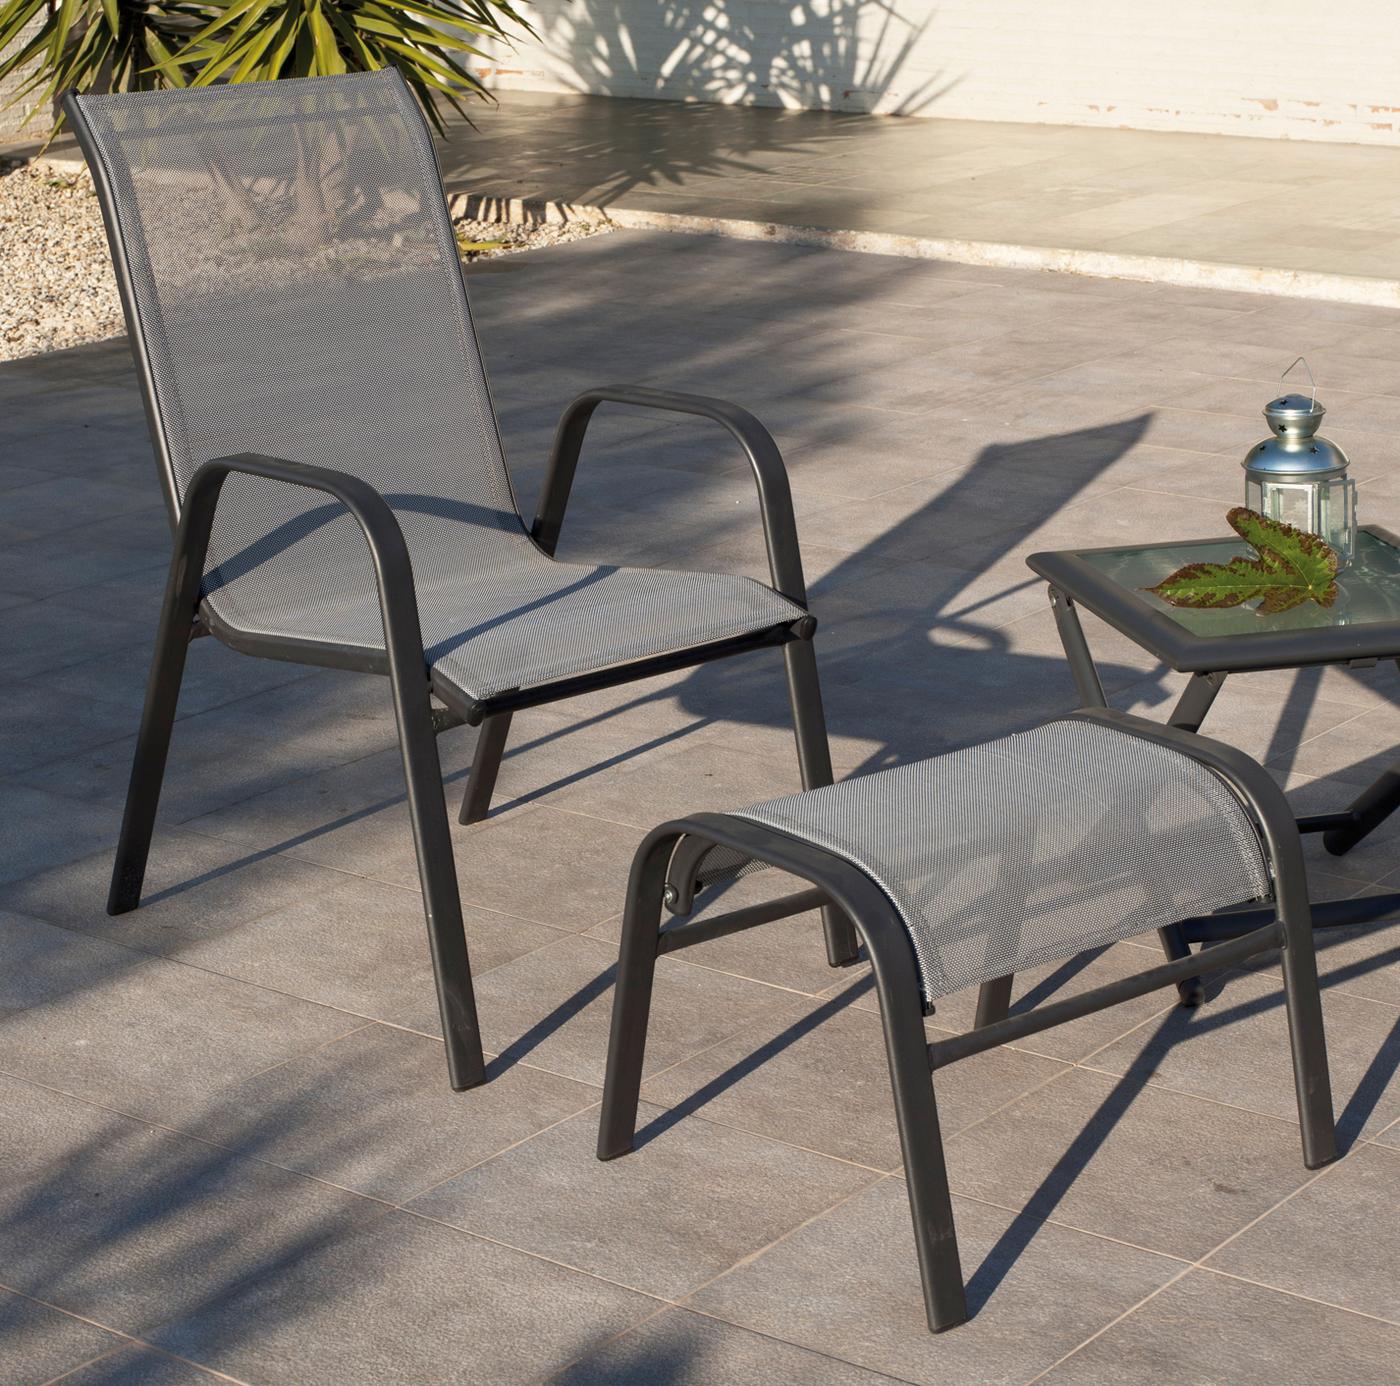 Set Acero Sulam-21 - Conjunto de acero inoxidable color antracita: mesa auxiliar con tapa de cristal templado + 2 sillones apilables de acero y textilen + reposapies